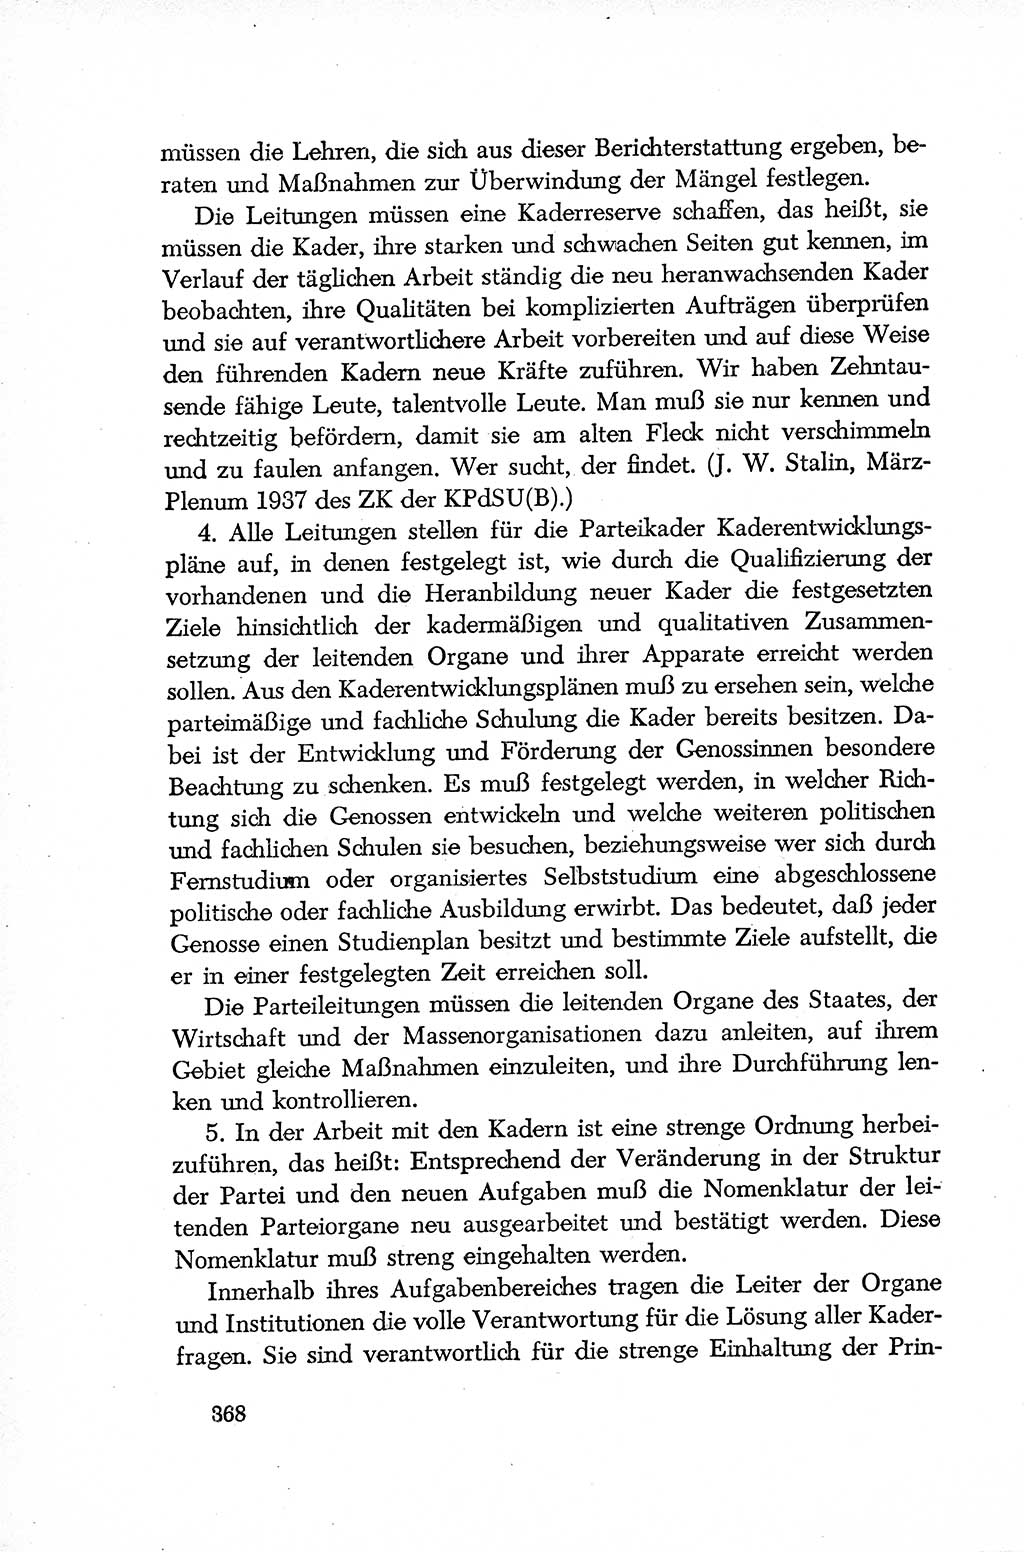 Dokumente der Sozialistischen Einheitspartei Deutschlands (SED) [Deutsche Demokratische Republik (DDR)] 1952-1953, Seite 368 (Dok. SED DDR 1952-1953, S. 368)